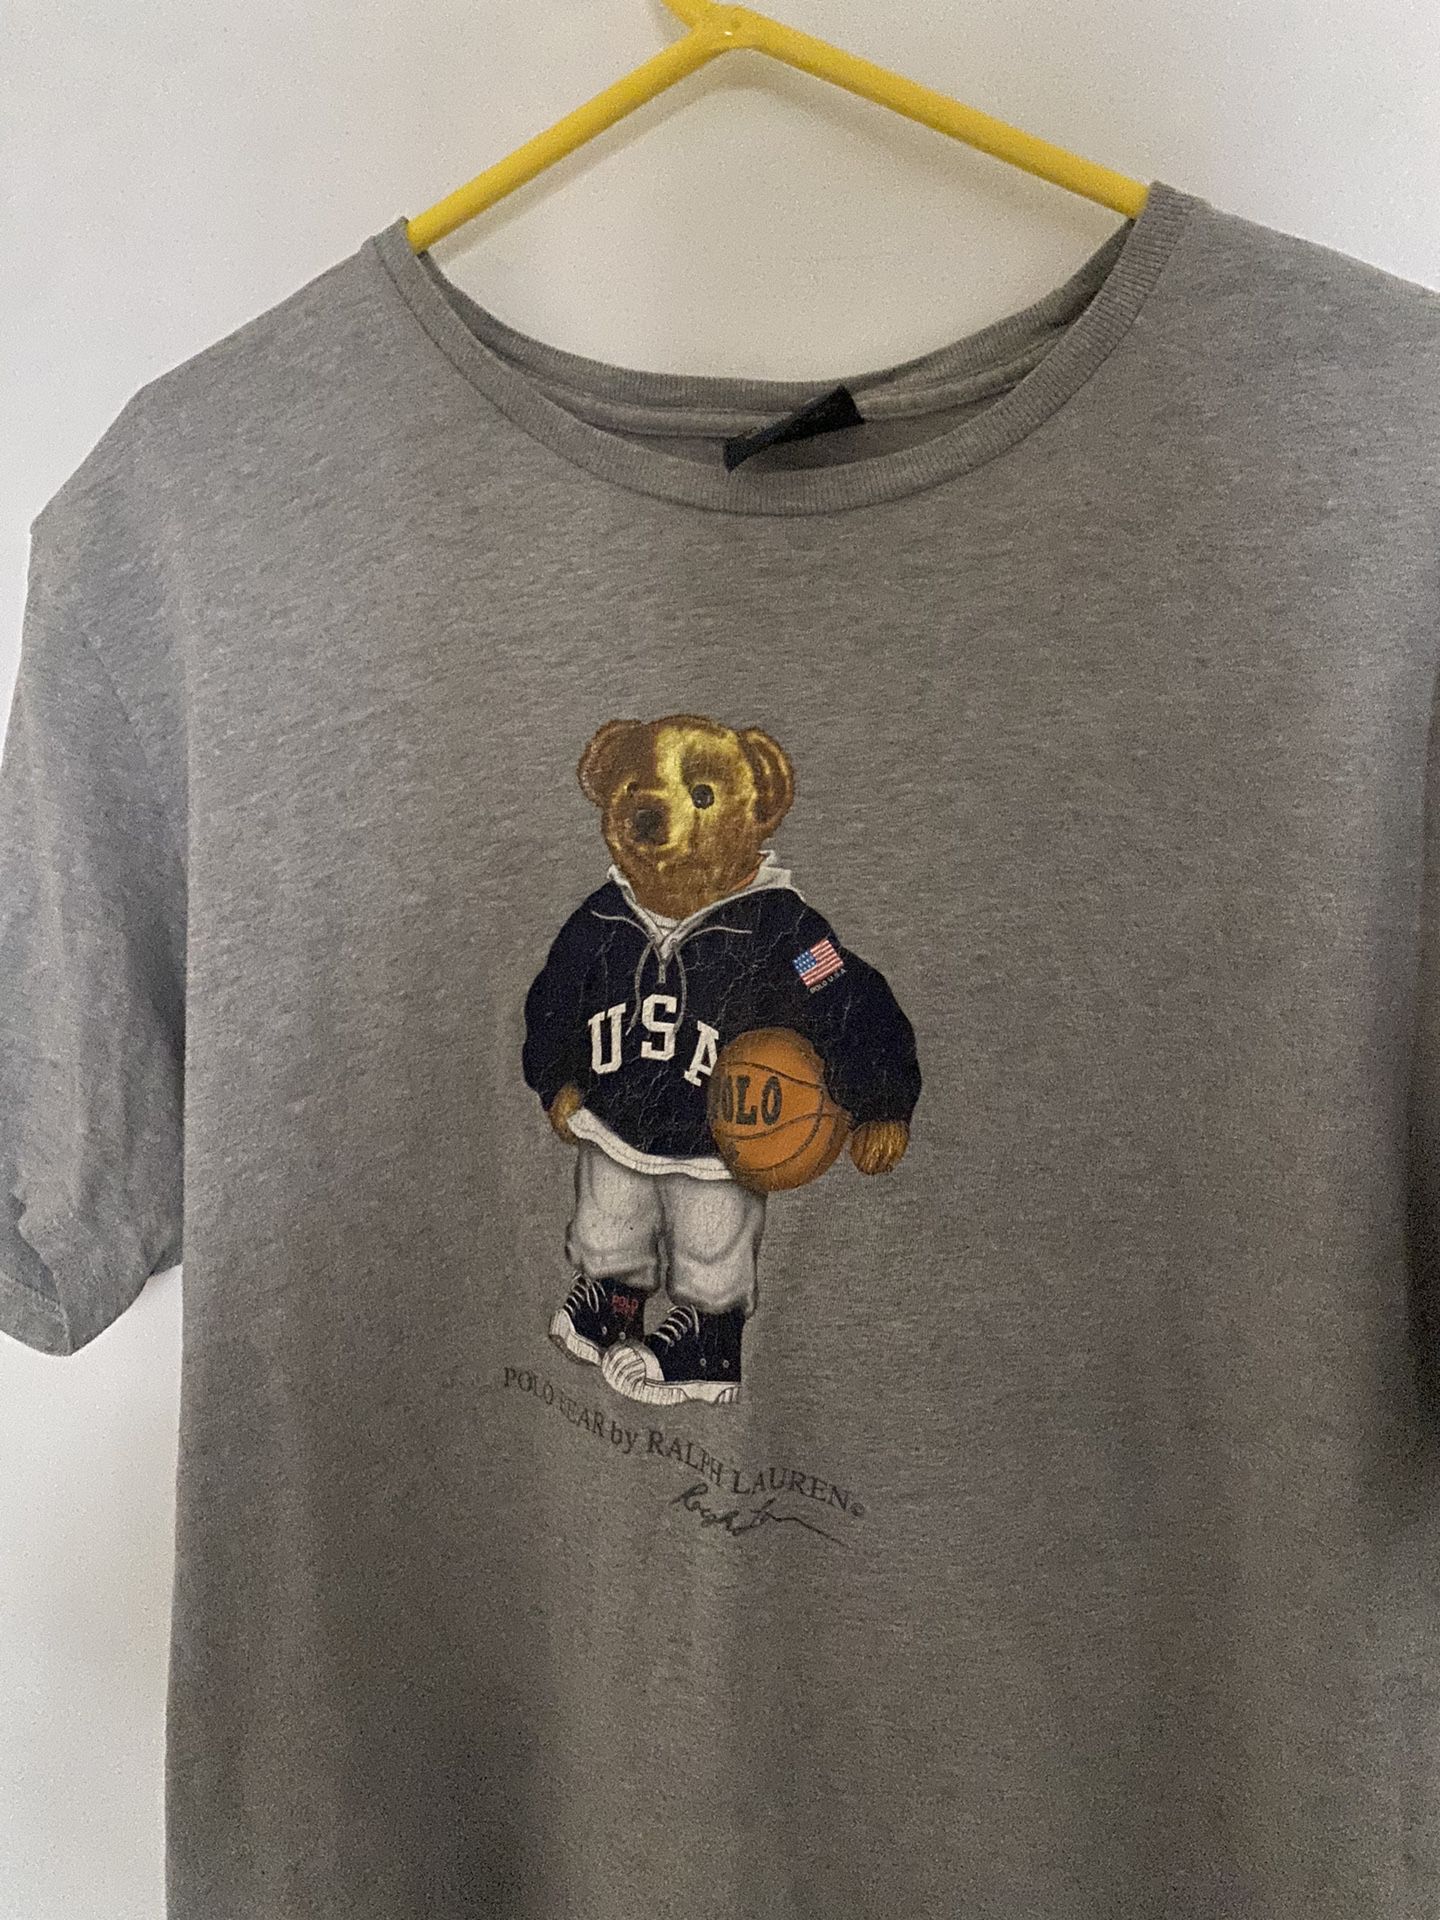 Vintage Polo Ralph Lauren Basketball Bear T-Shirt (L)